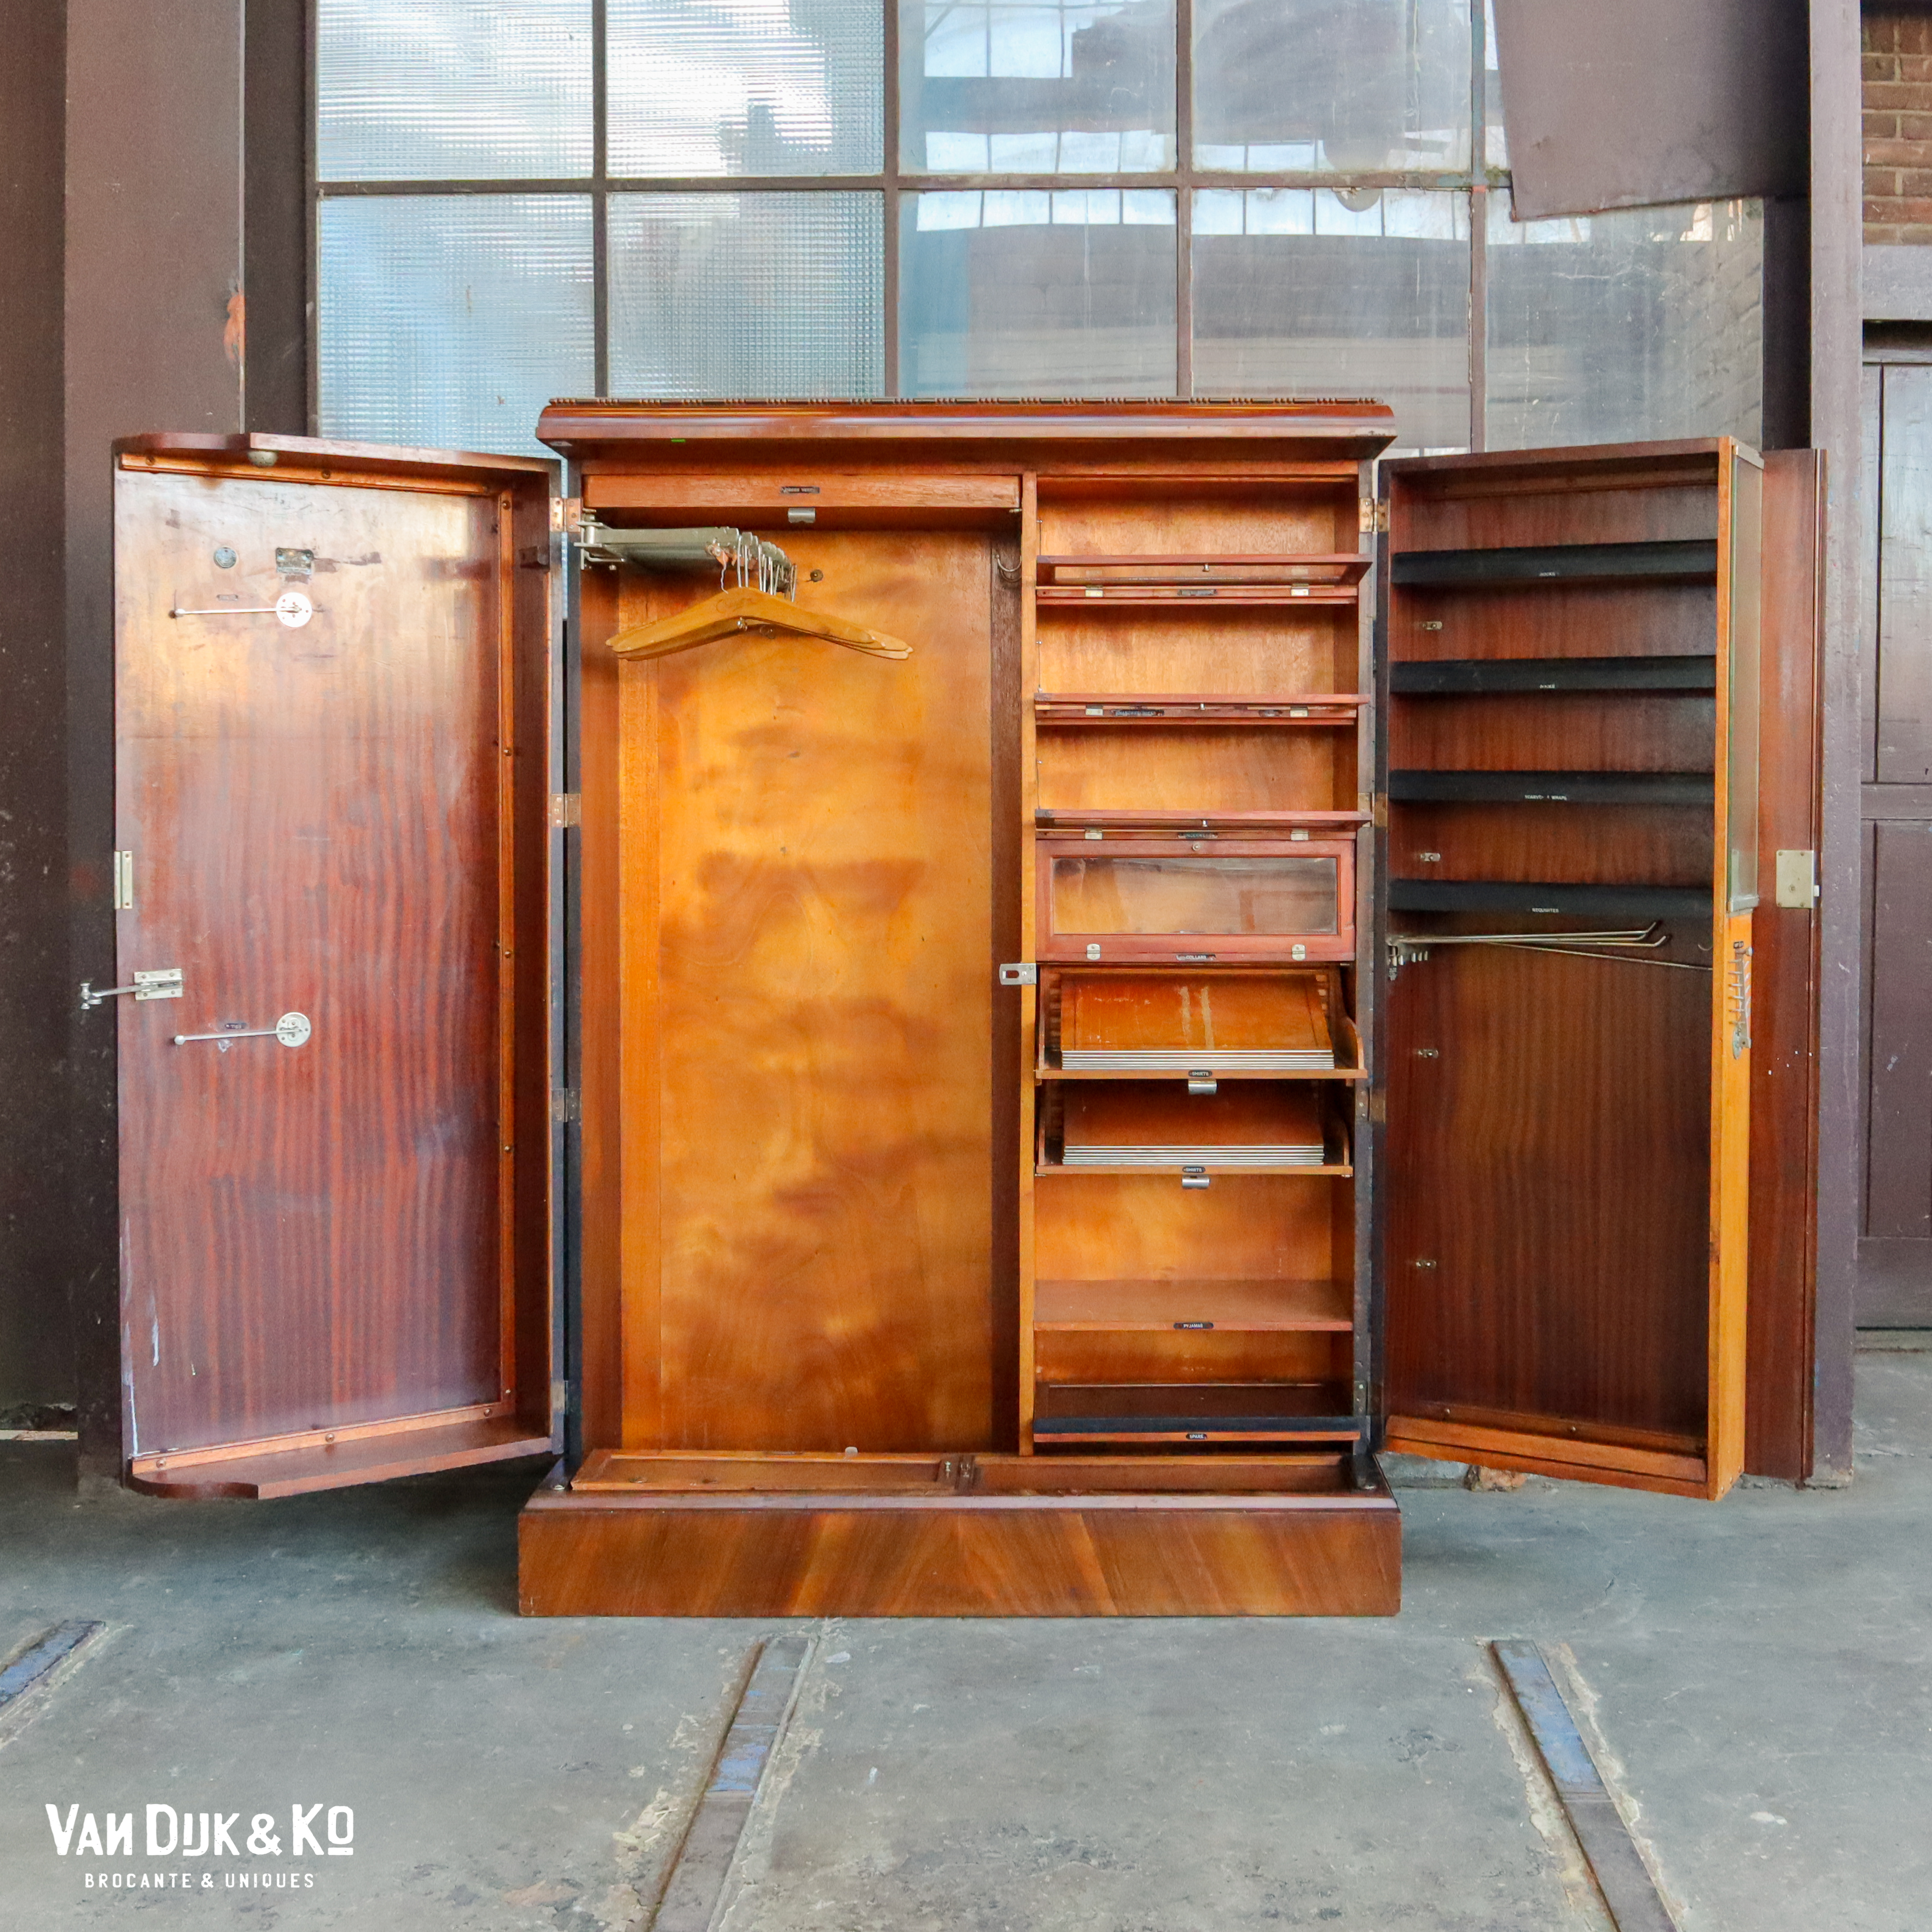 Brig Slapen weigeren Vintage Art Deco kledingkast » Van Dijk & Ko